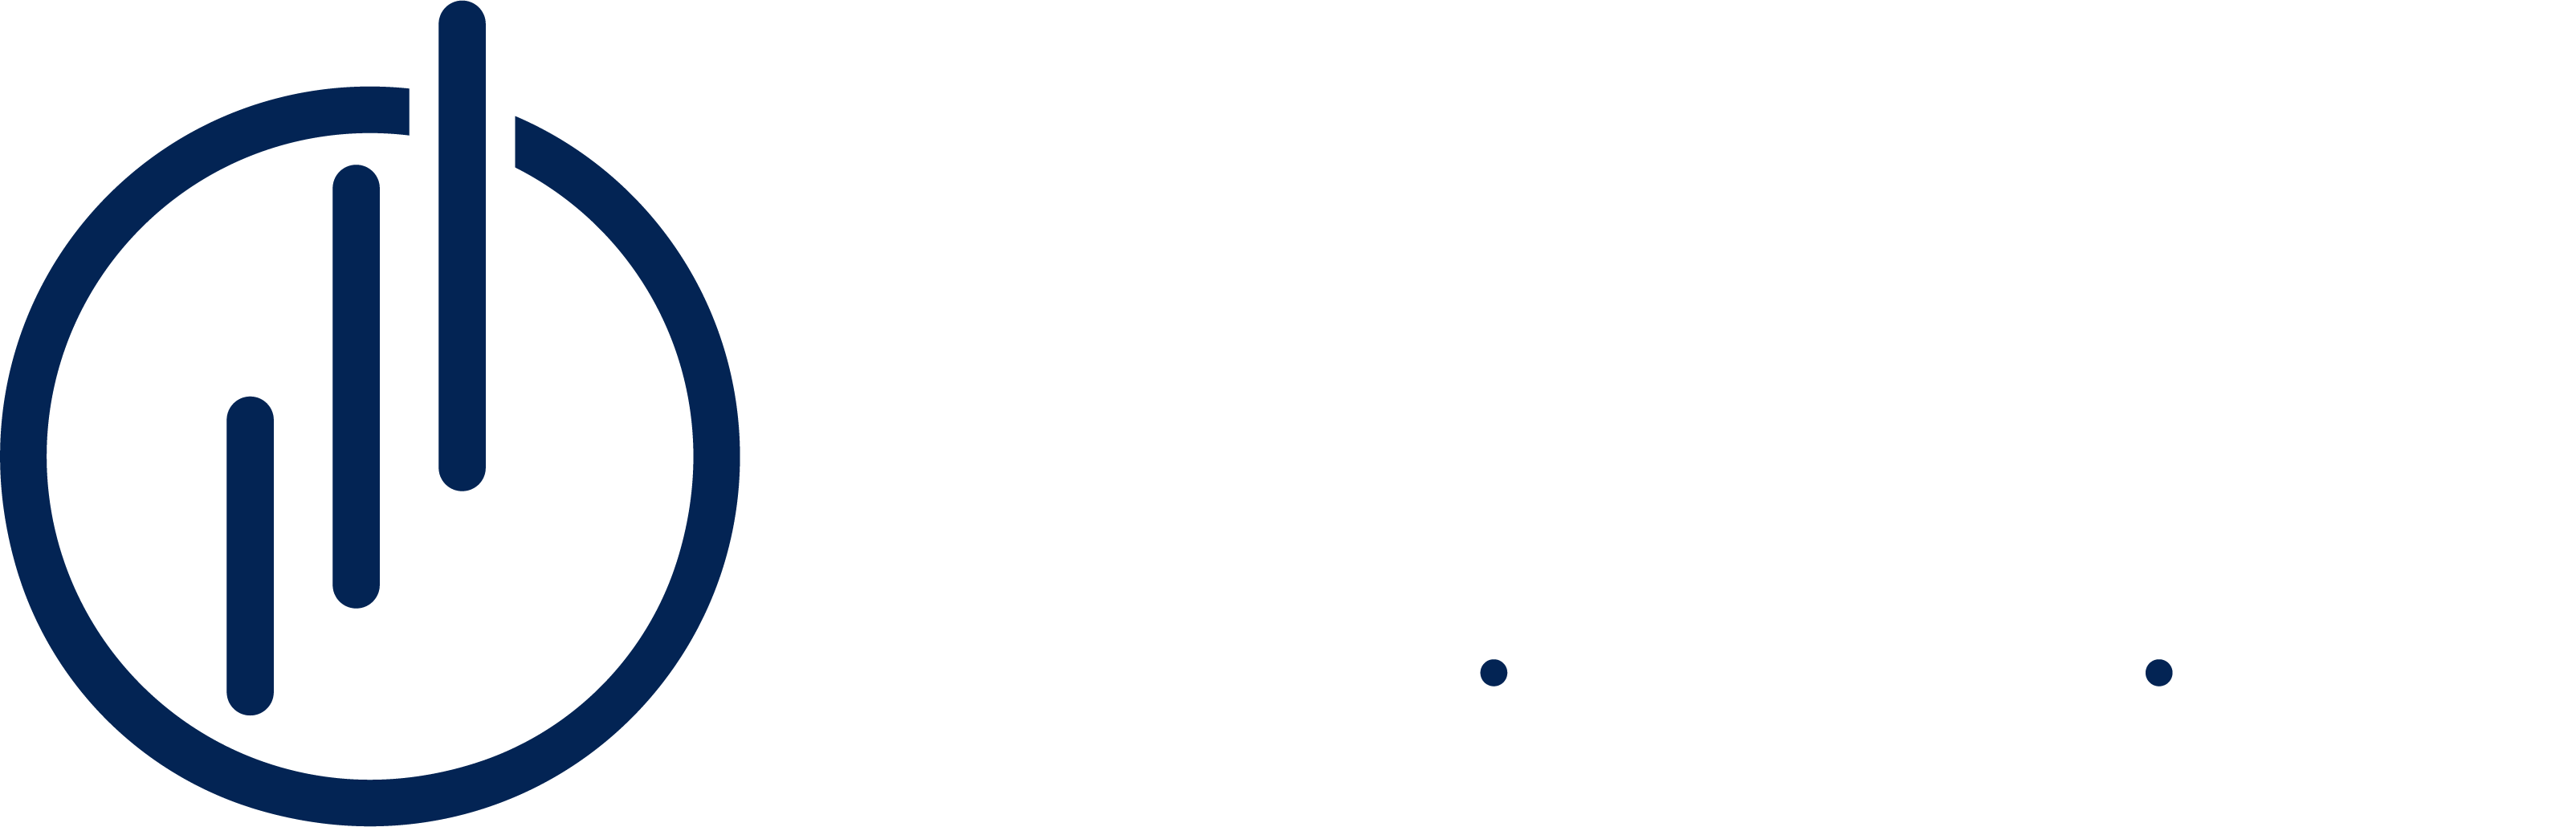 Pantix Consulting - Marketing - Design